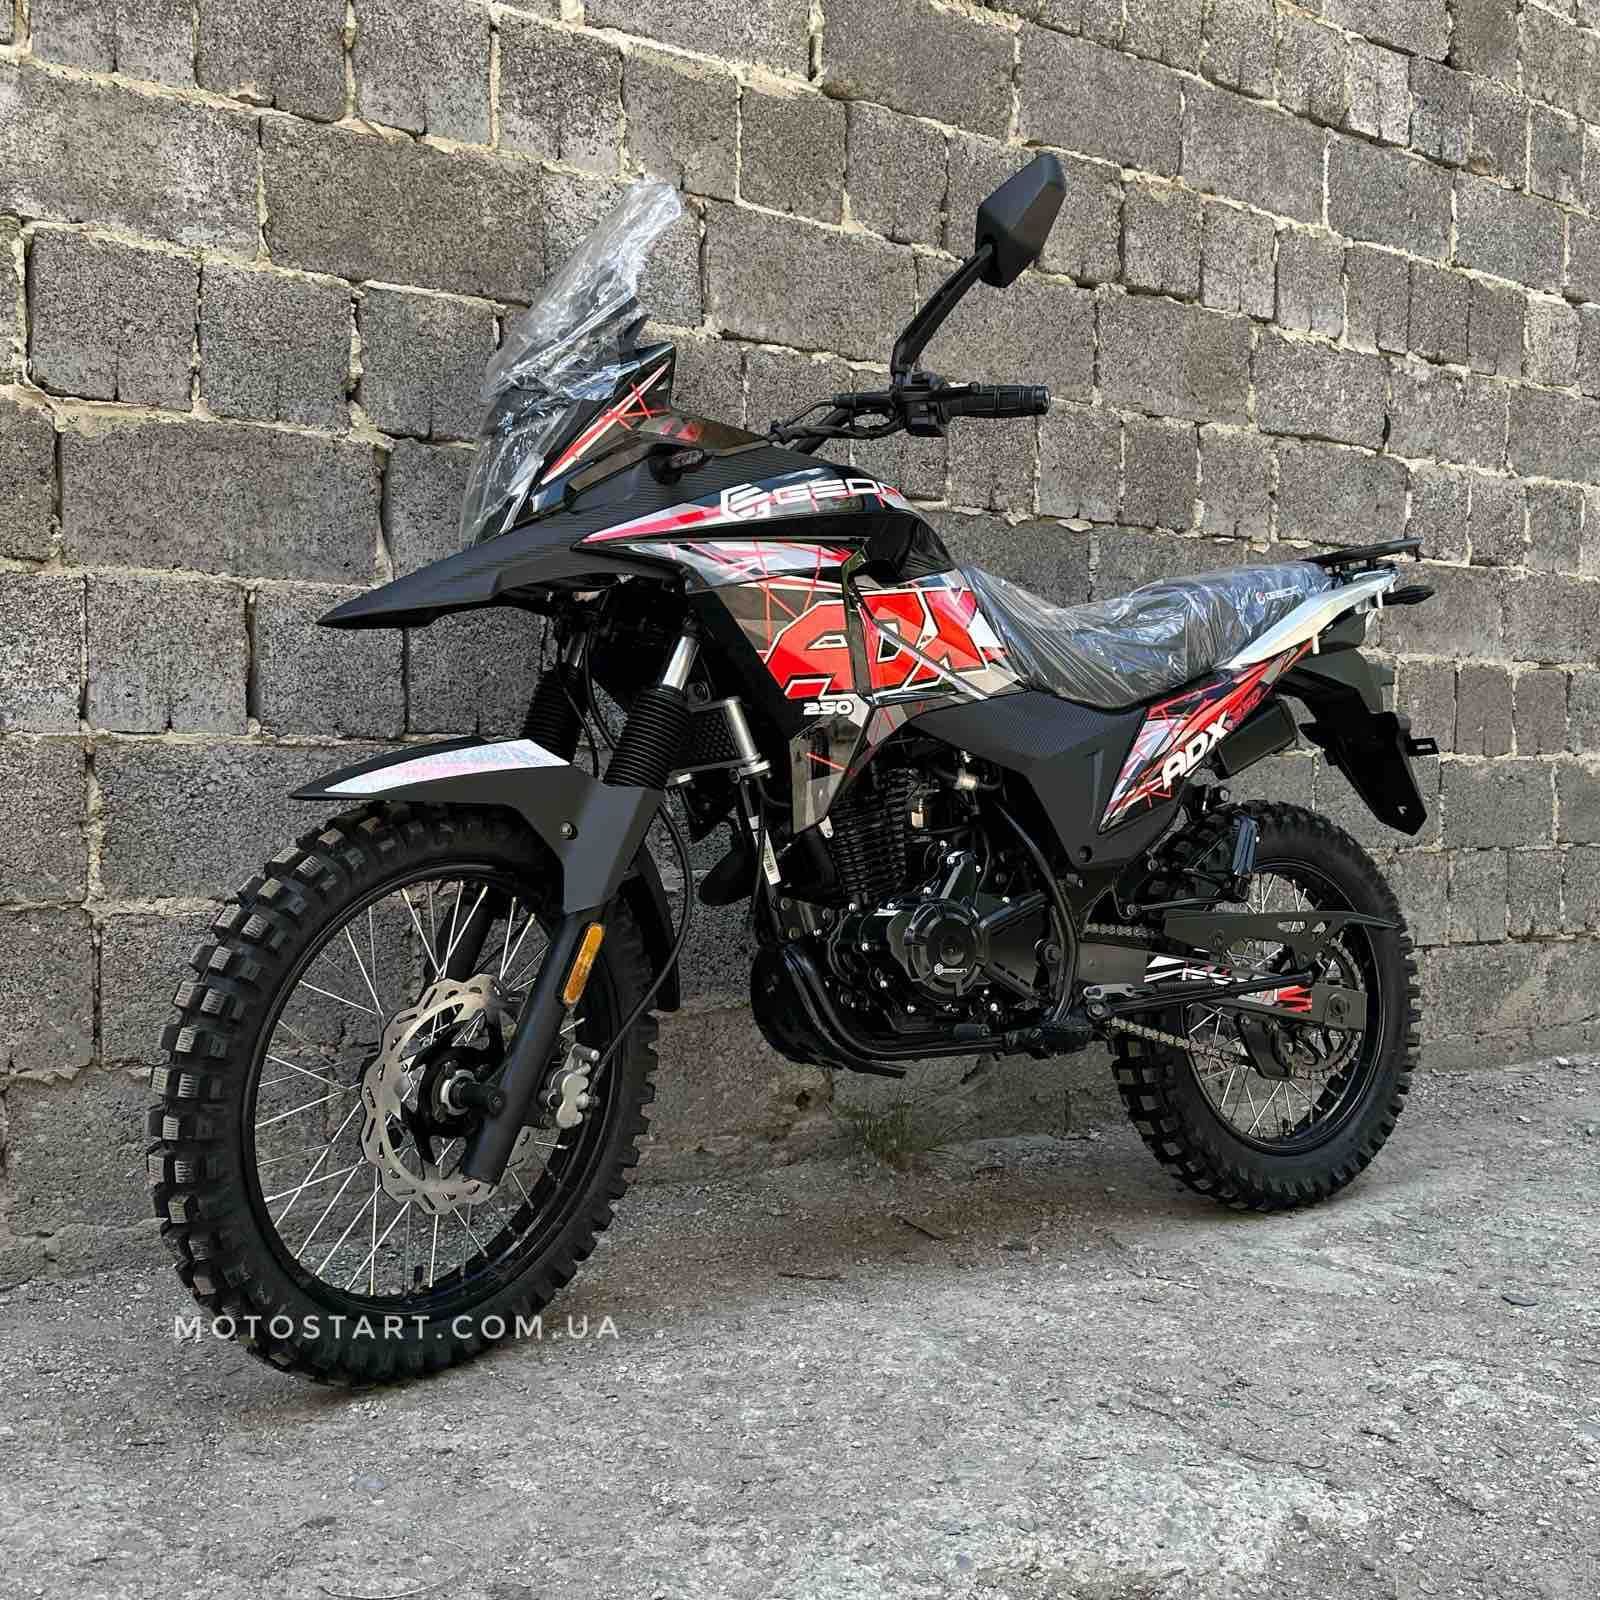 Мотоцикл Geon ADX 250 (ендуро-турист) новинка